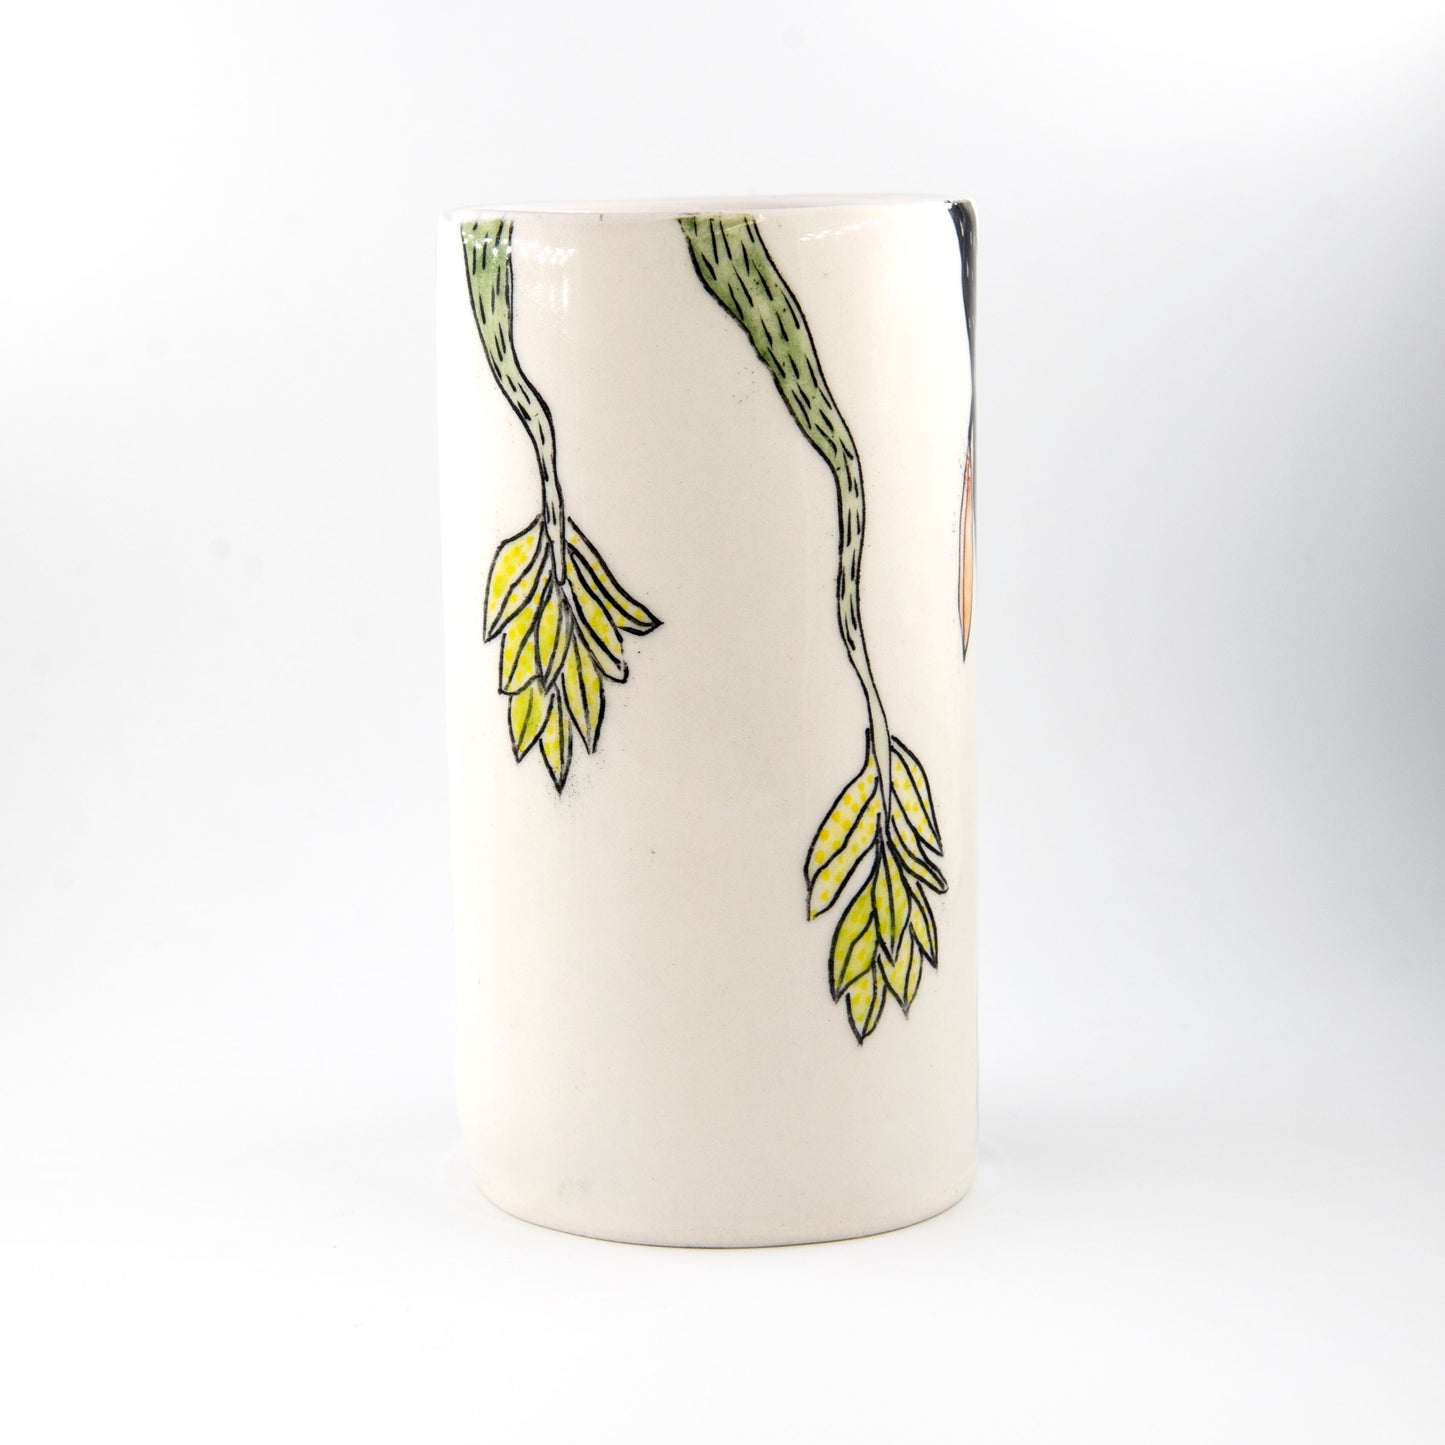 Marney McDiarmid, Black Vines Vase